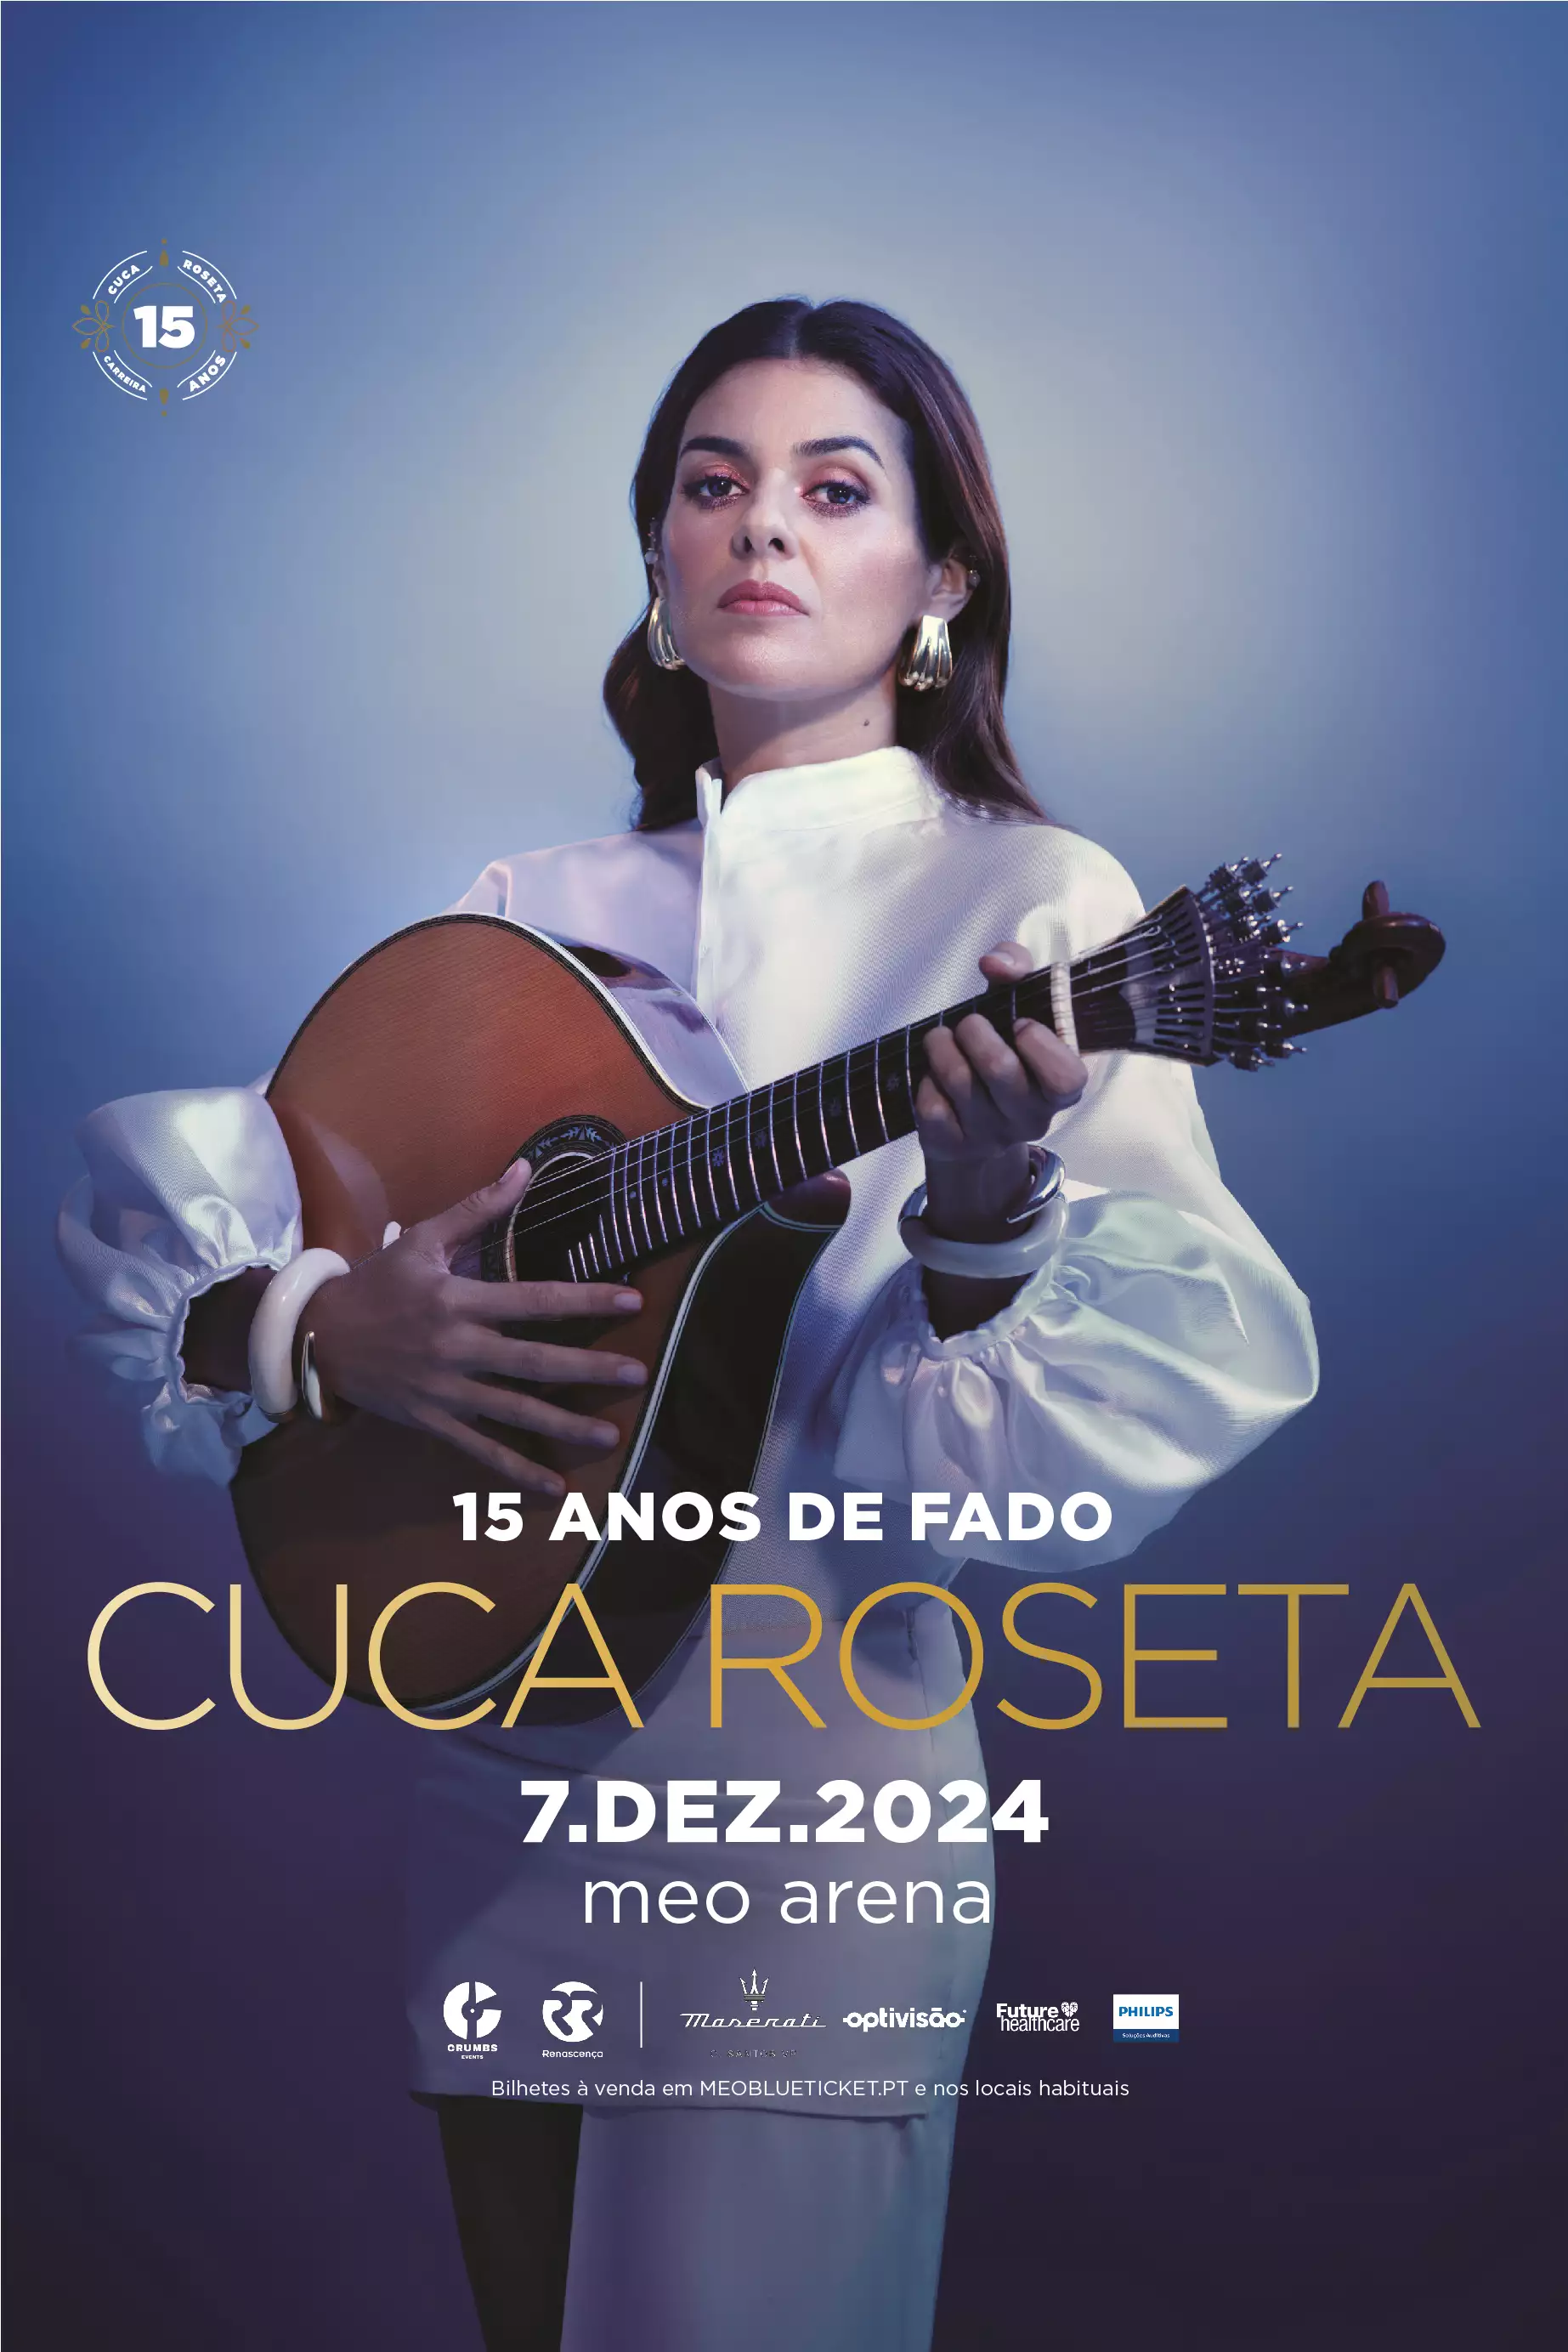 CUCA ROSETA - 15 ANOS DE FADO 